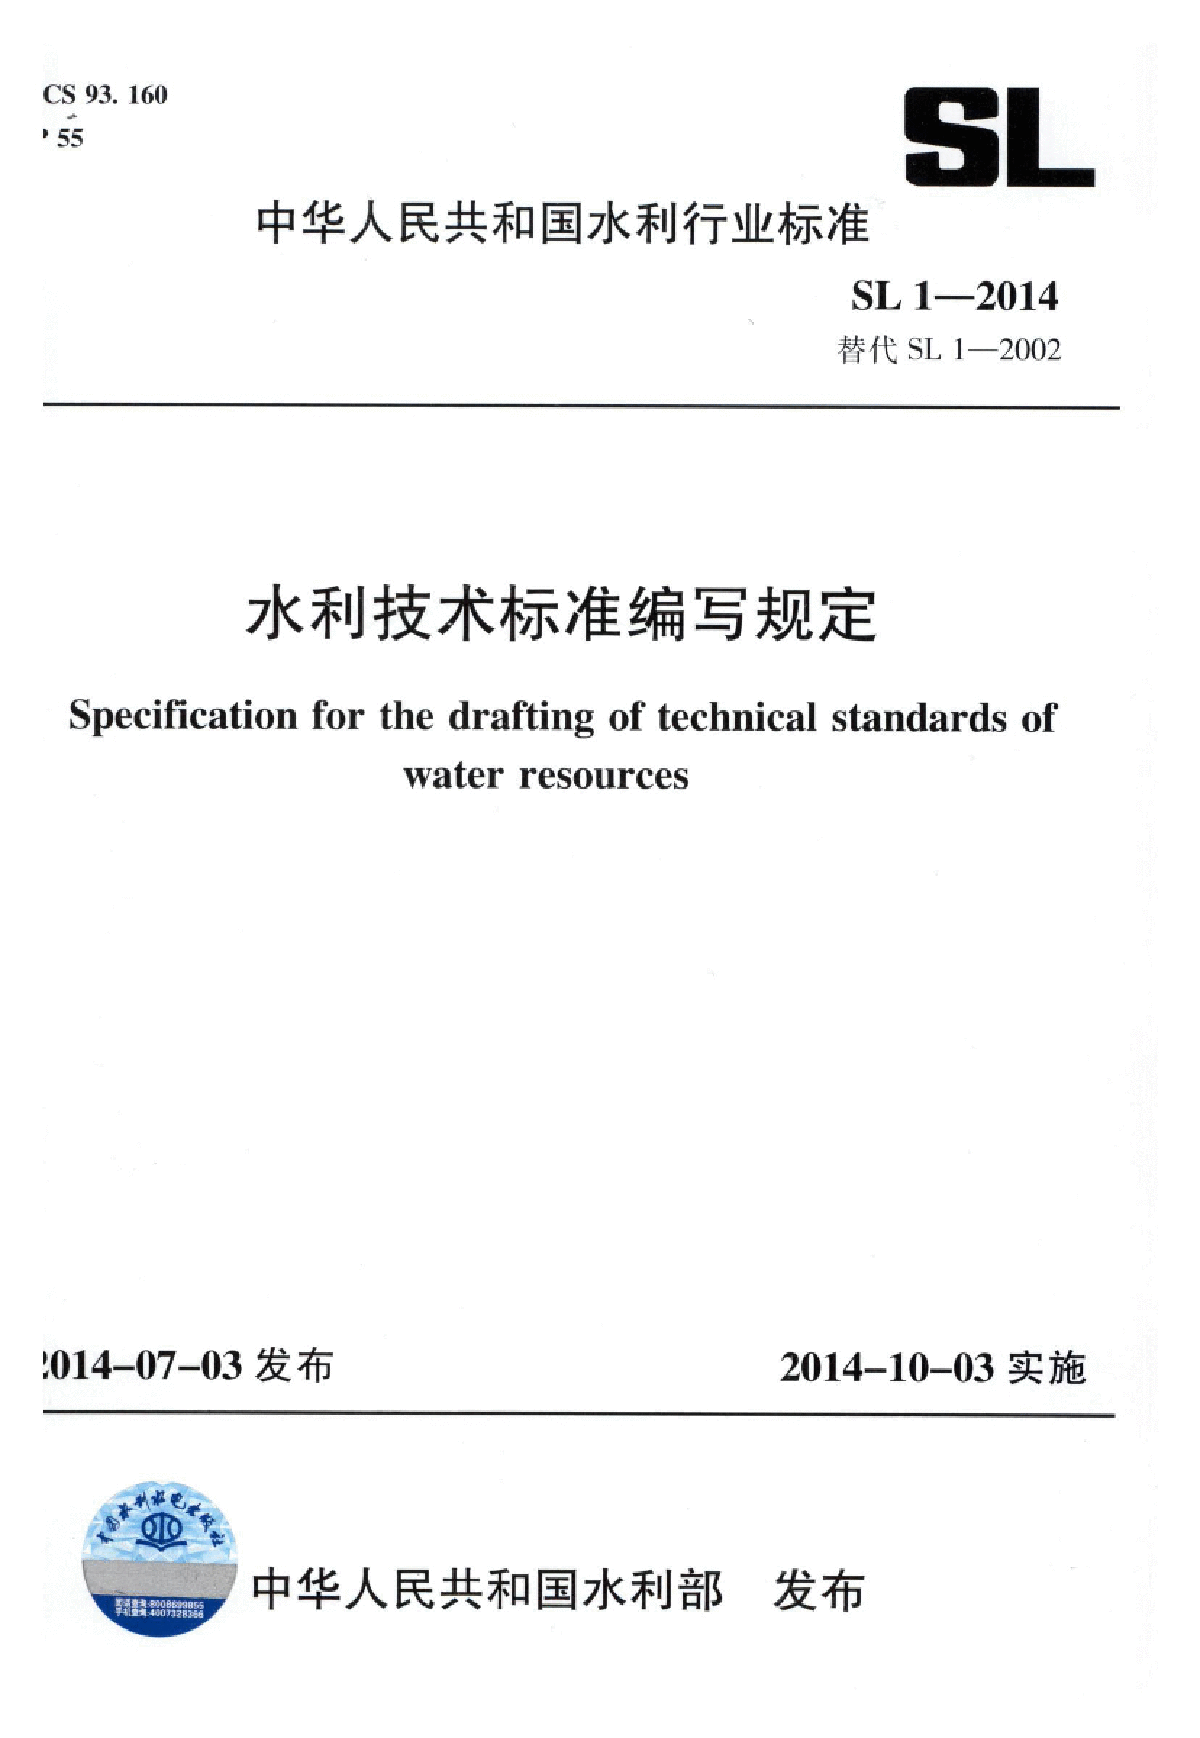 SL 1-2014水利技术标准编写规定